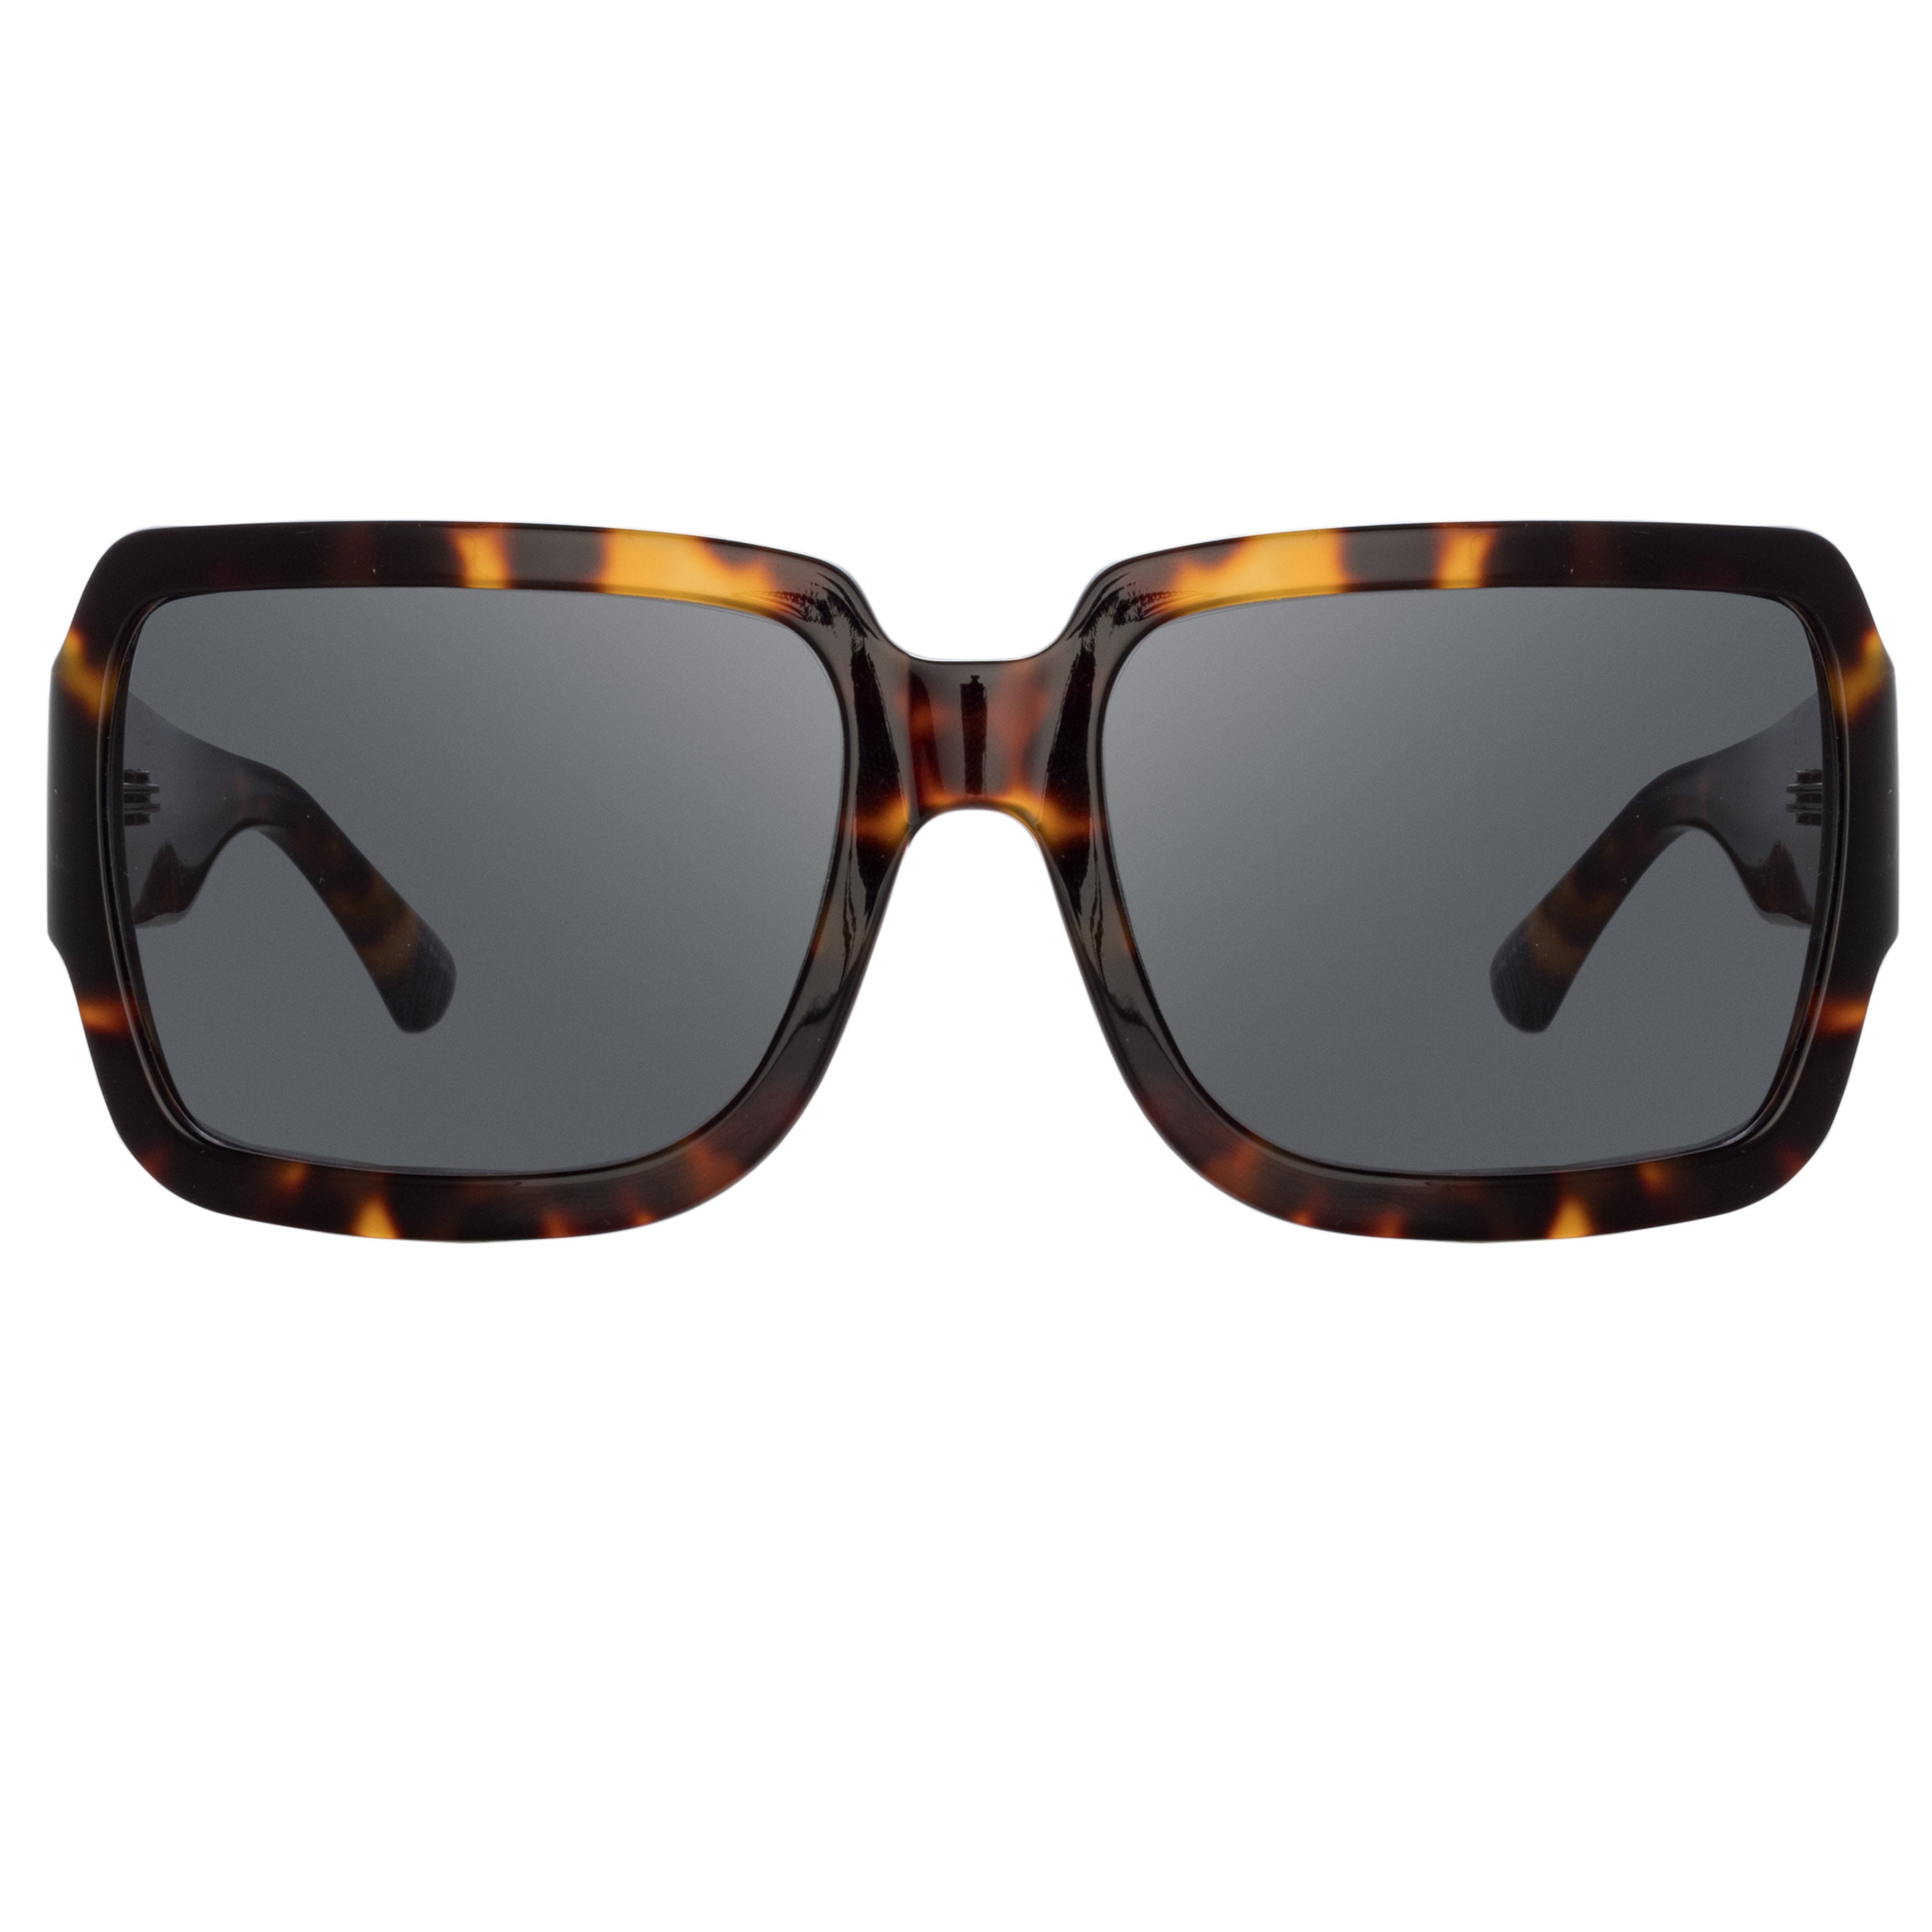 Dries Van Noten Oversized Sunglasses in Tortoiseshell